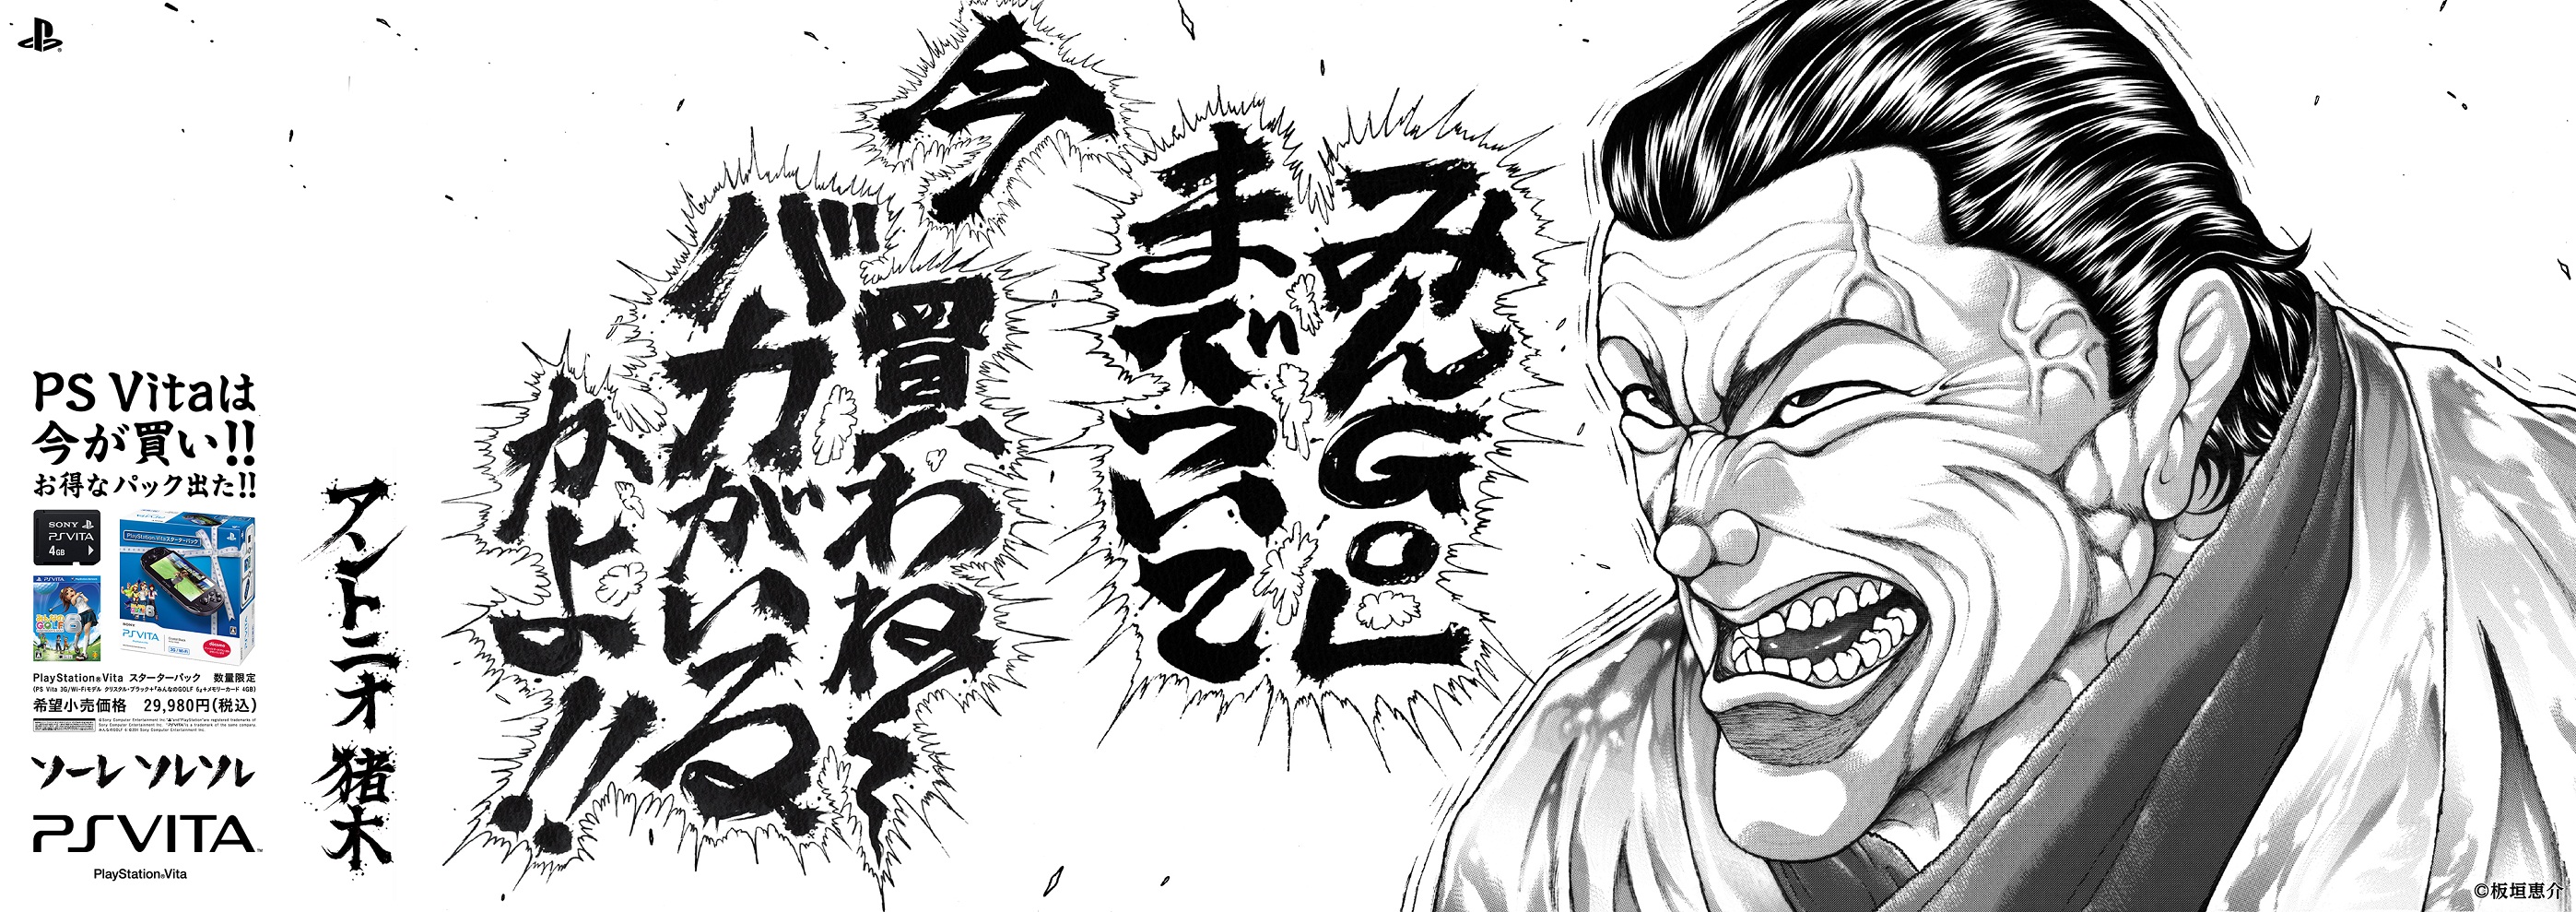 猪木vs橋本 伝説の名シーンをコミカライズ 人気格闘漫画家 板垣恵介